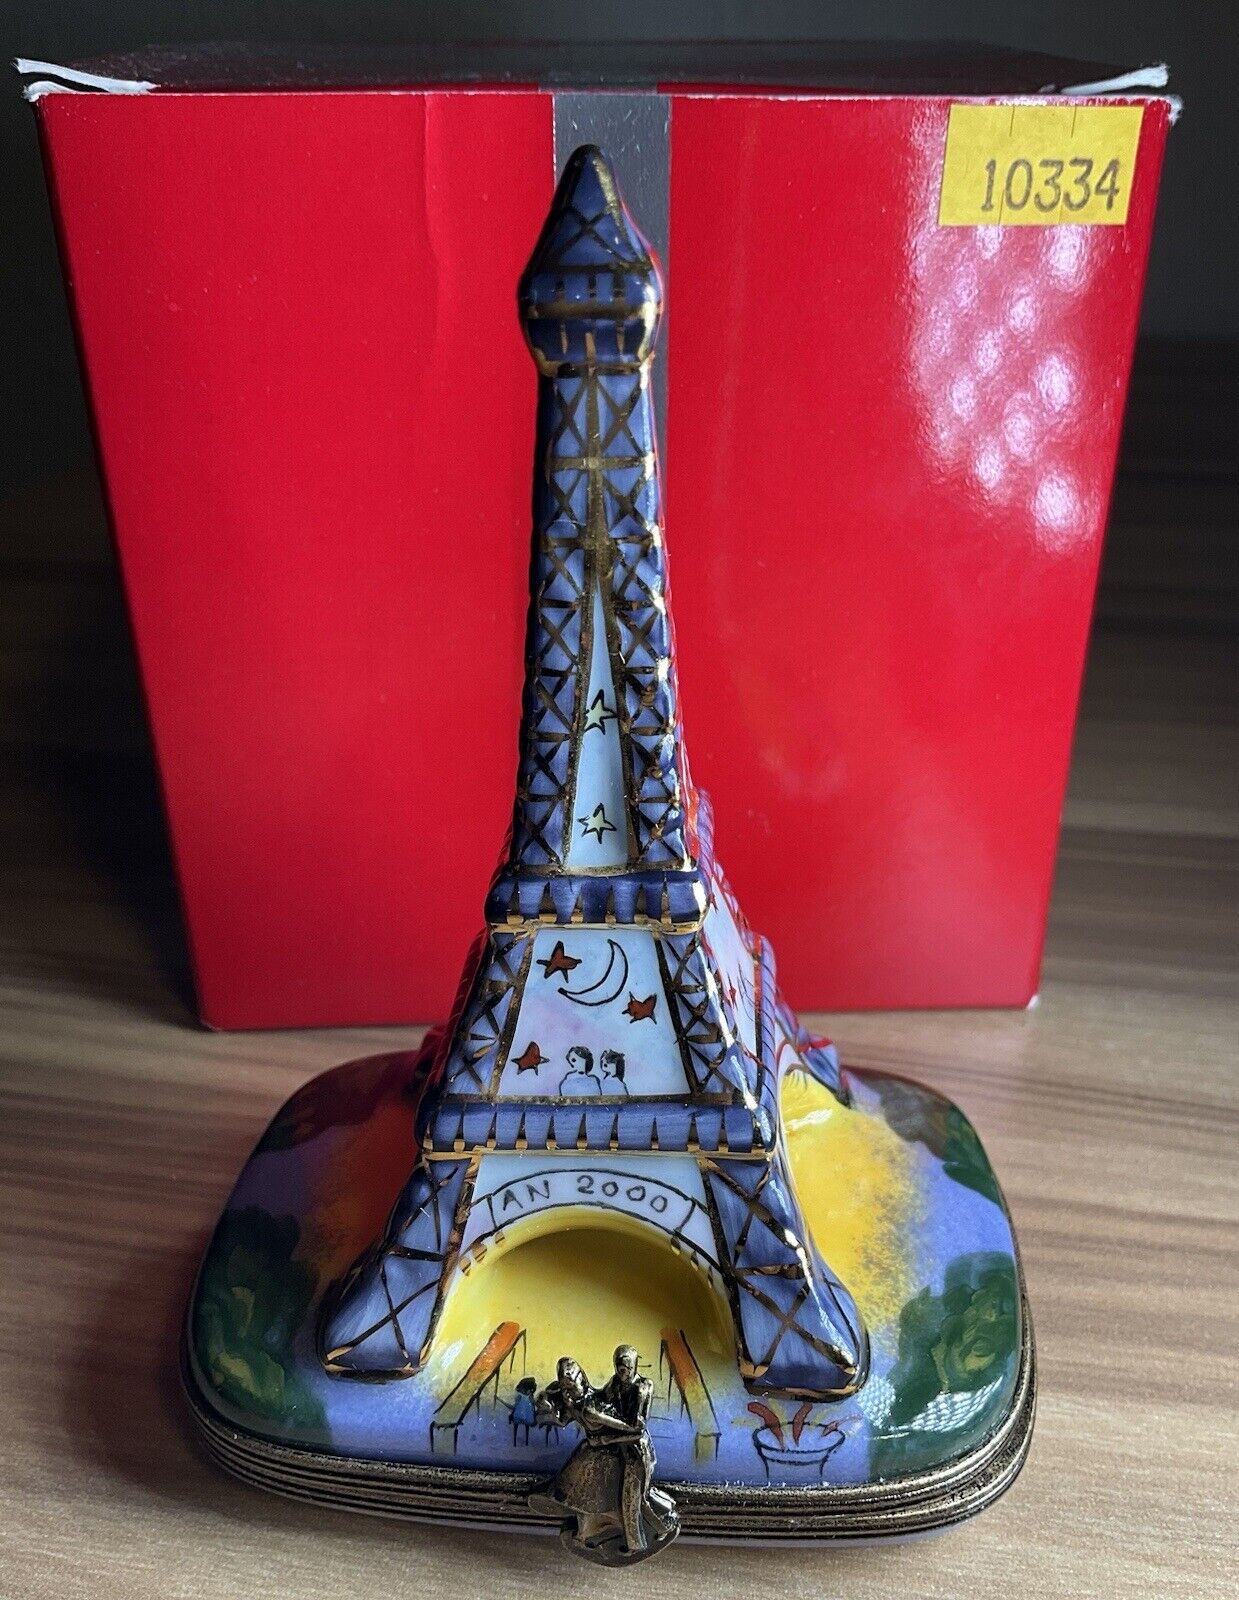 La Gloriette Limoges France Porcelain Trinket Box Eiffel Tower 2000 Hand Painted